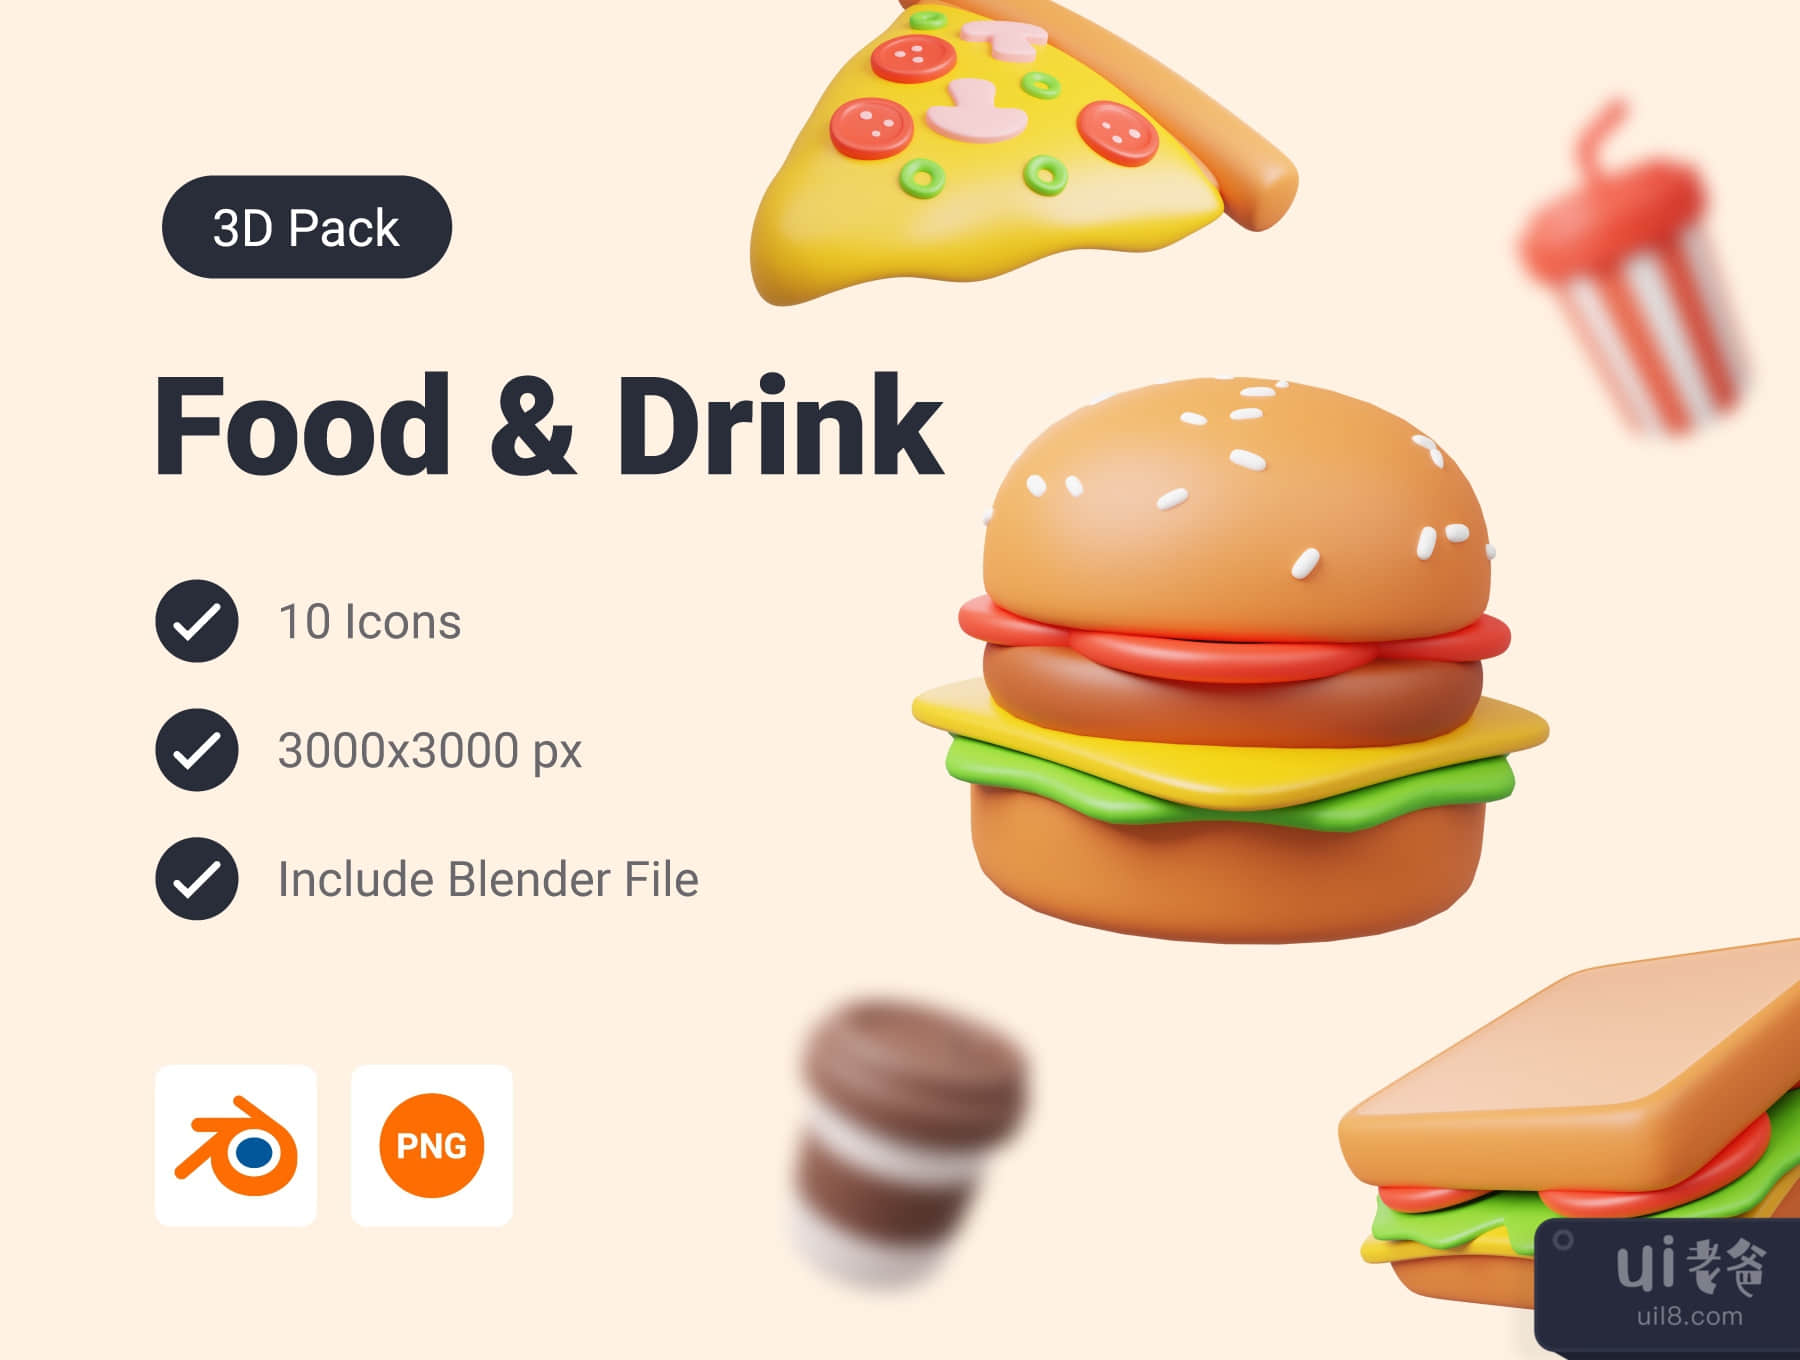 食品和饮料3D图标包 (Food and Drink 3D Icon Pack)插图